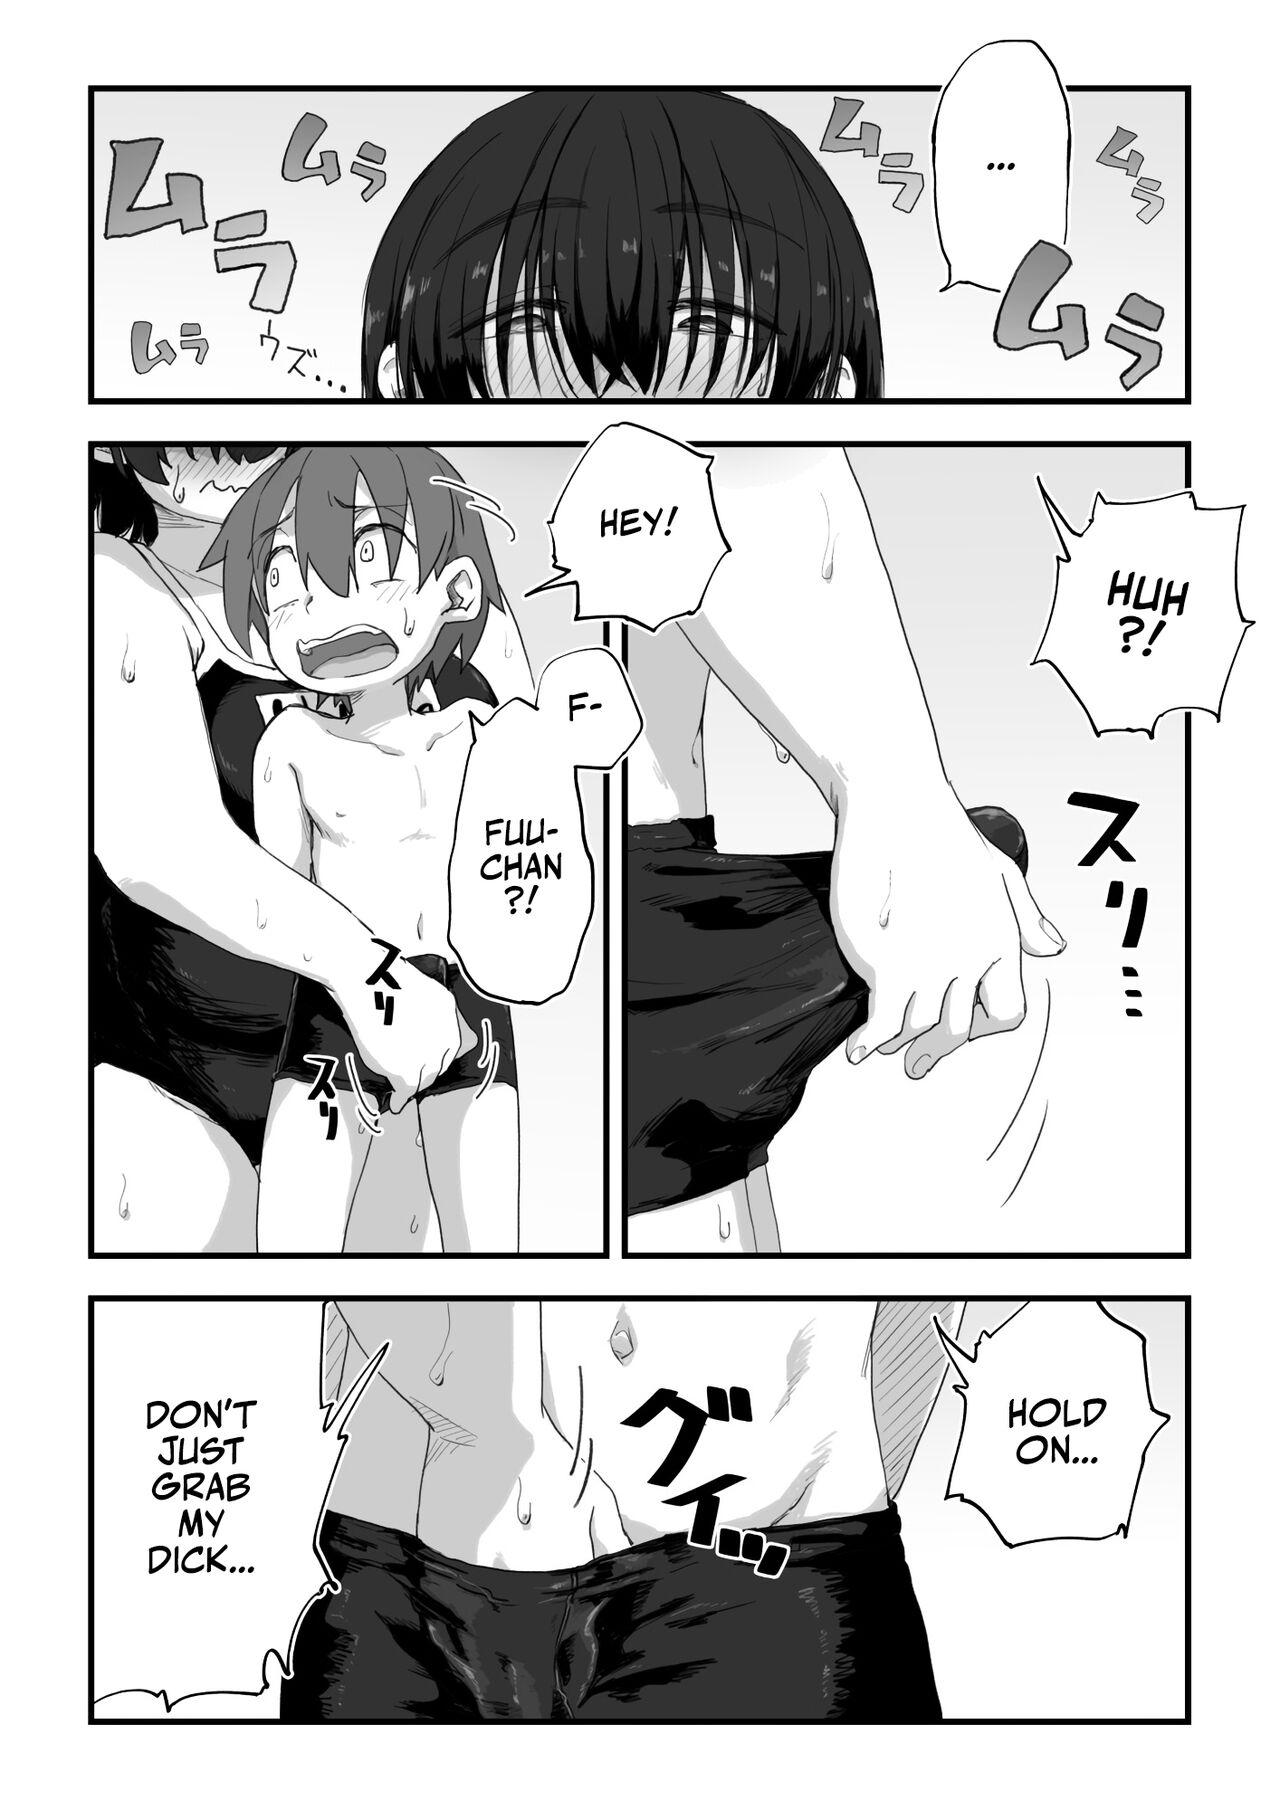 Penis Boku wa Manken Senzoku Nude Model 3 1 Wa+ 2 Wa + 3 Wa | I'm the Manga Club's Naked Model 3 Part 1-3 - Original Whatsapp - Page 5